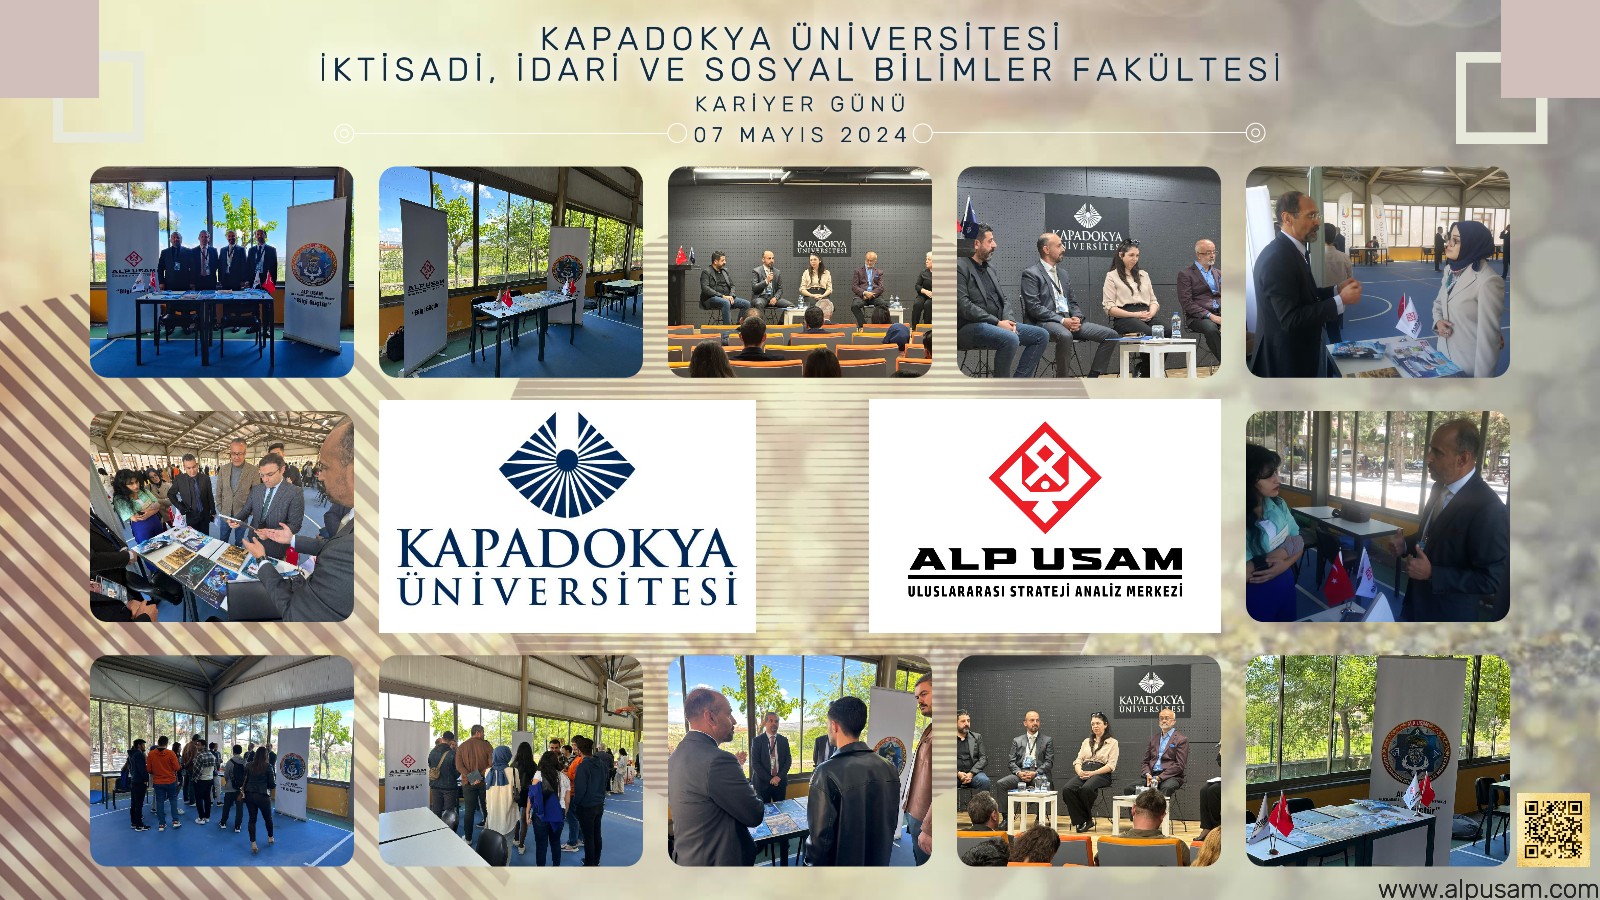 Kapadokya Üniversitesi Kariyer Günü